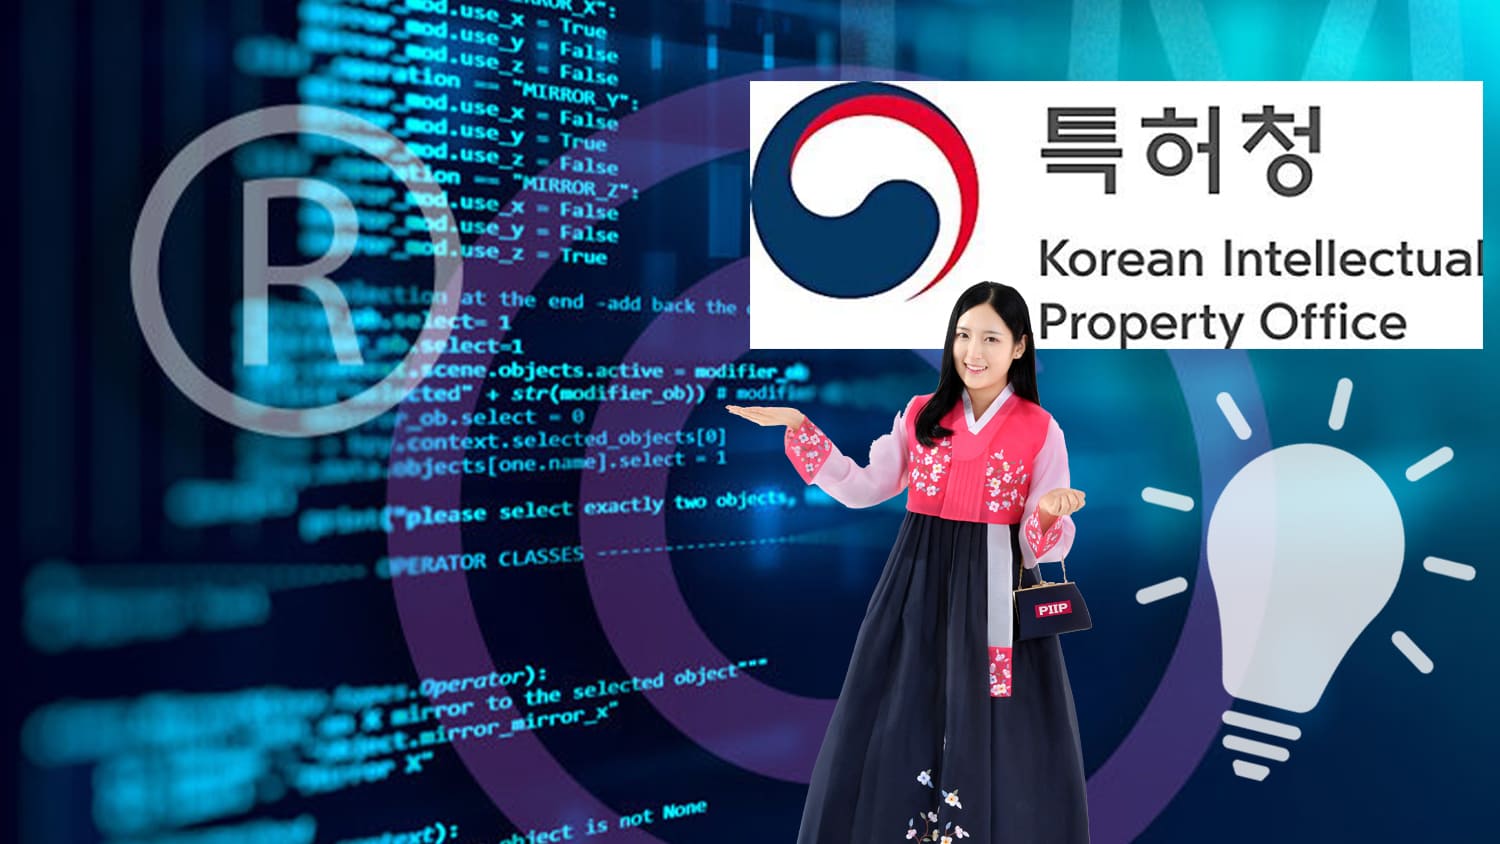 韓国商標：「ソフトウェア」に関連する商品及び役務に対し「用途」の明記が必要となる